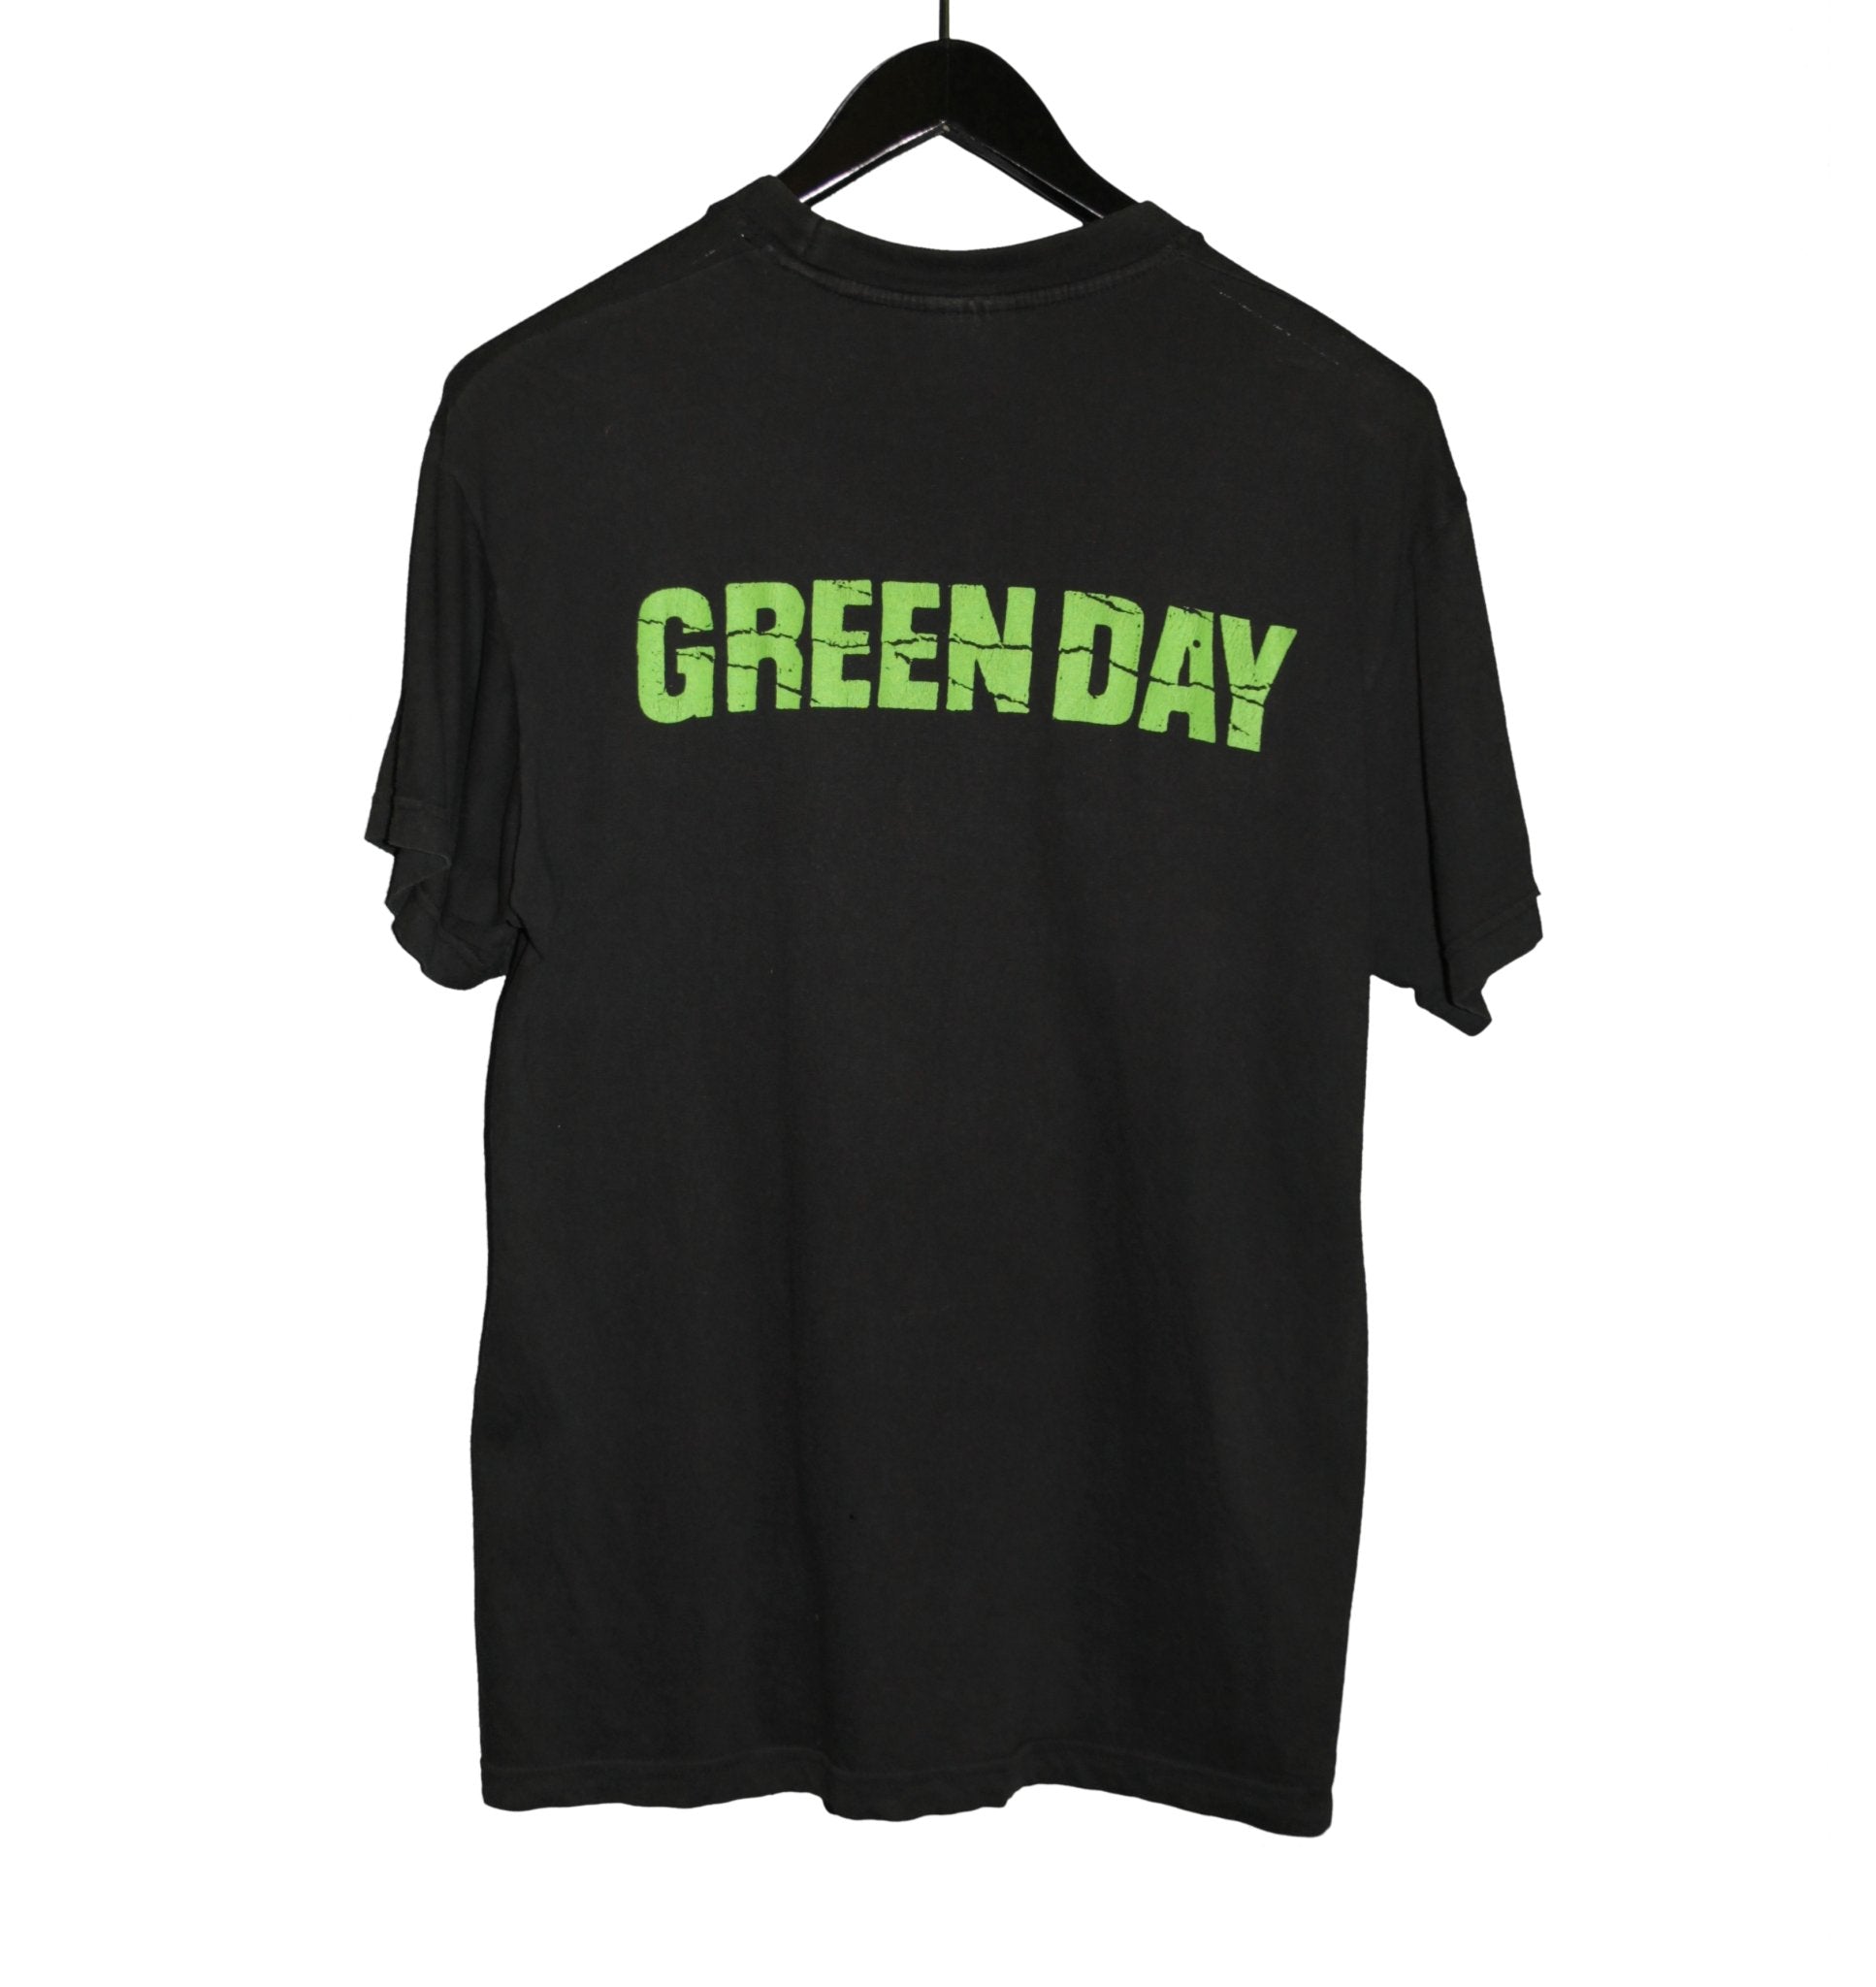 Green Day 1997 Nimrod Album Shirt - Faded AU